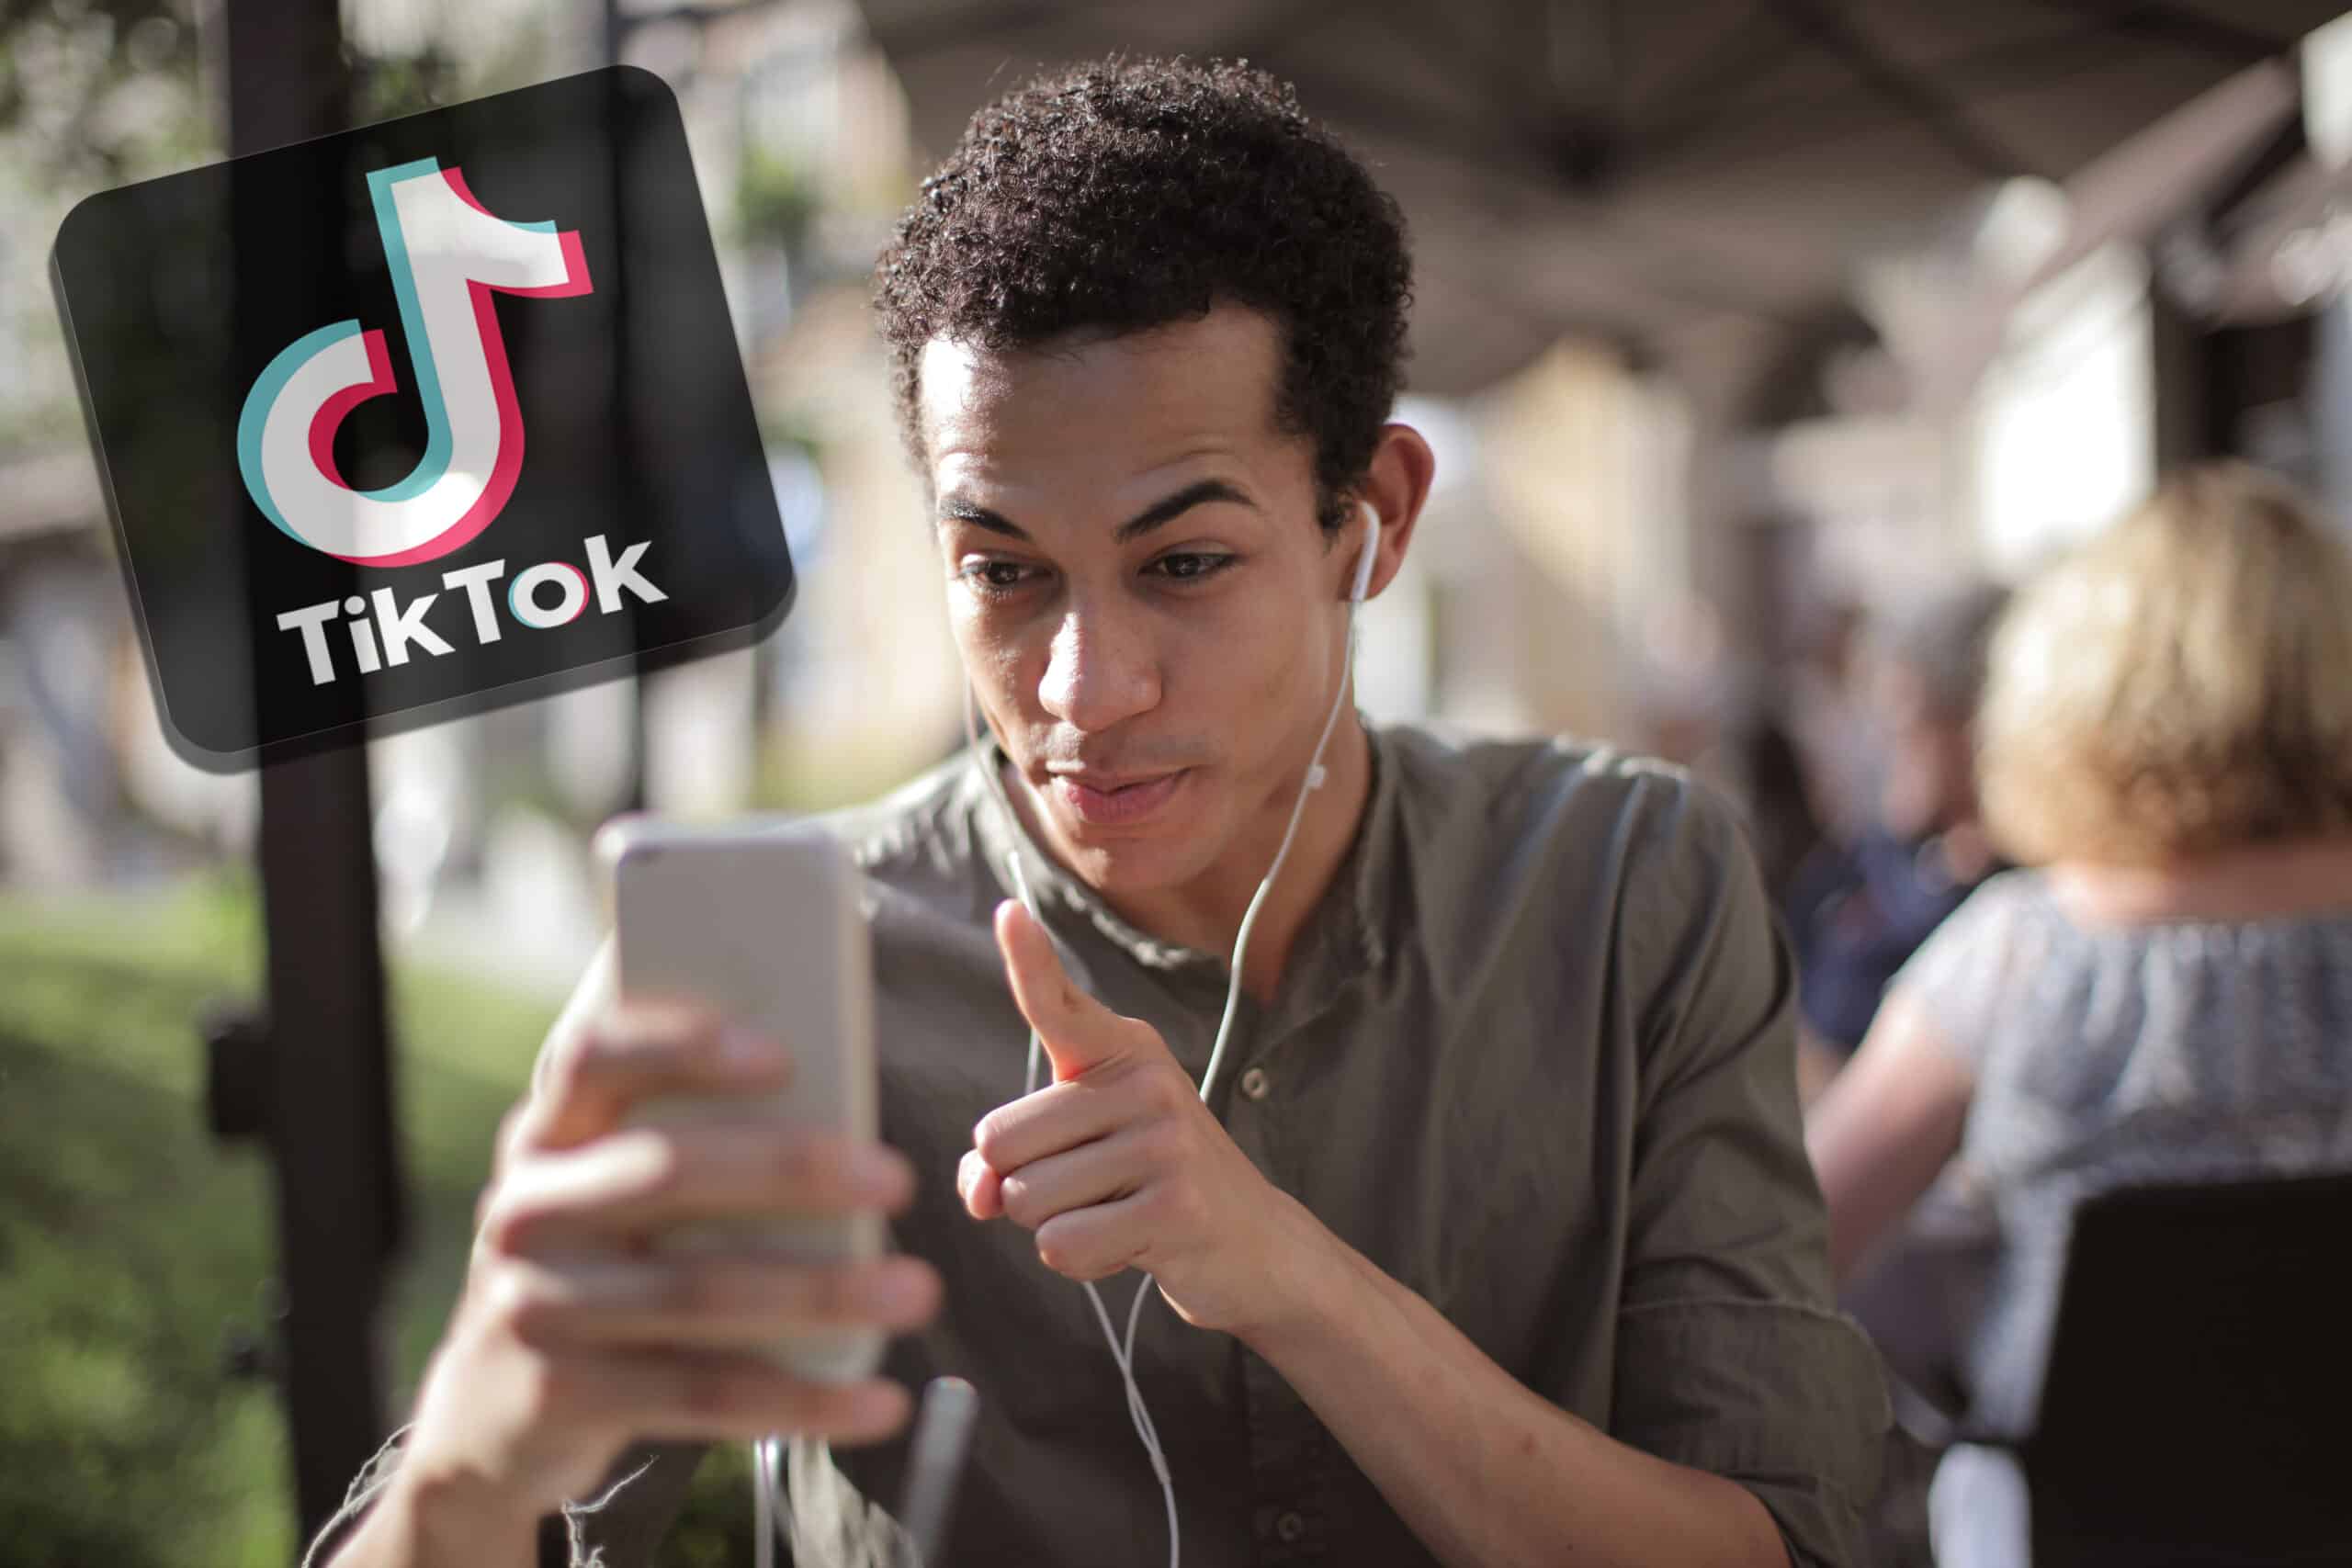 Η εφαρμογή Tik Tok κερδίζει συνεχώς έδαφος απέναντι στα πιο δημοφιλή social